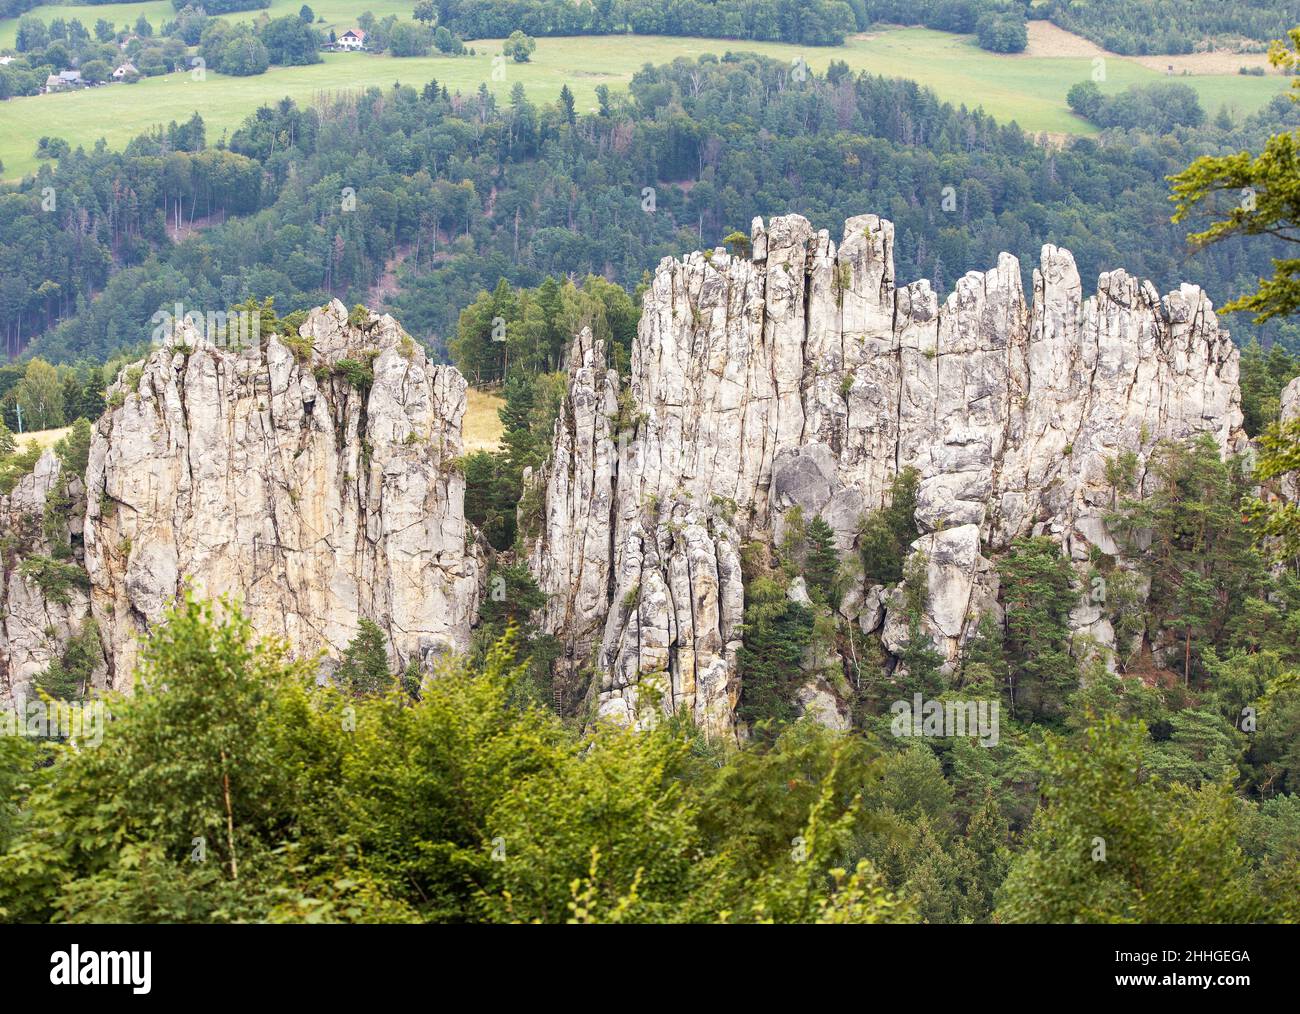 Suche skaly, trockene Felsen, Sandsteinfelsen Stadt, Cesky raj, böhmisches oder Böhmisches Paradies, Tschechische Republik Stockfoto